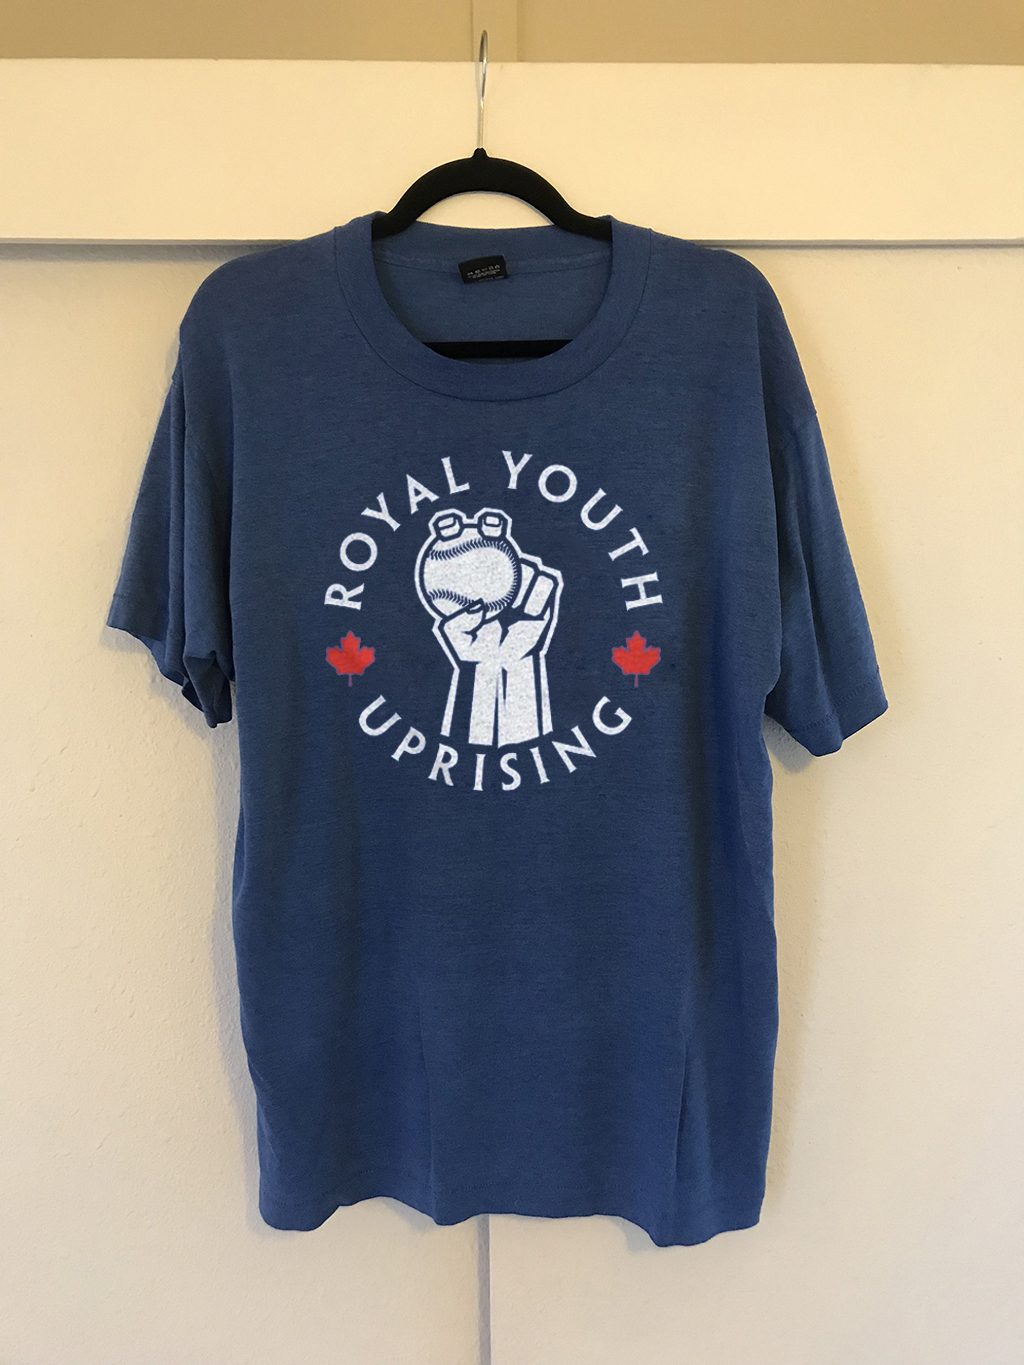 Royal Youth Uprising 2020 T-Shirt